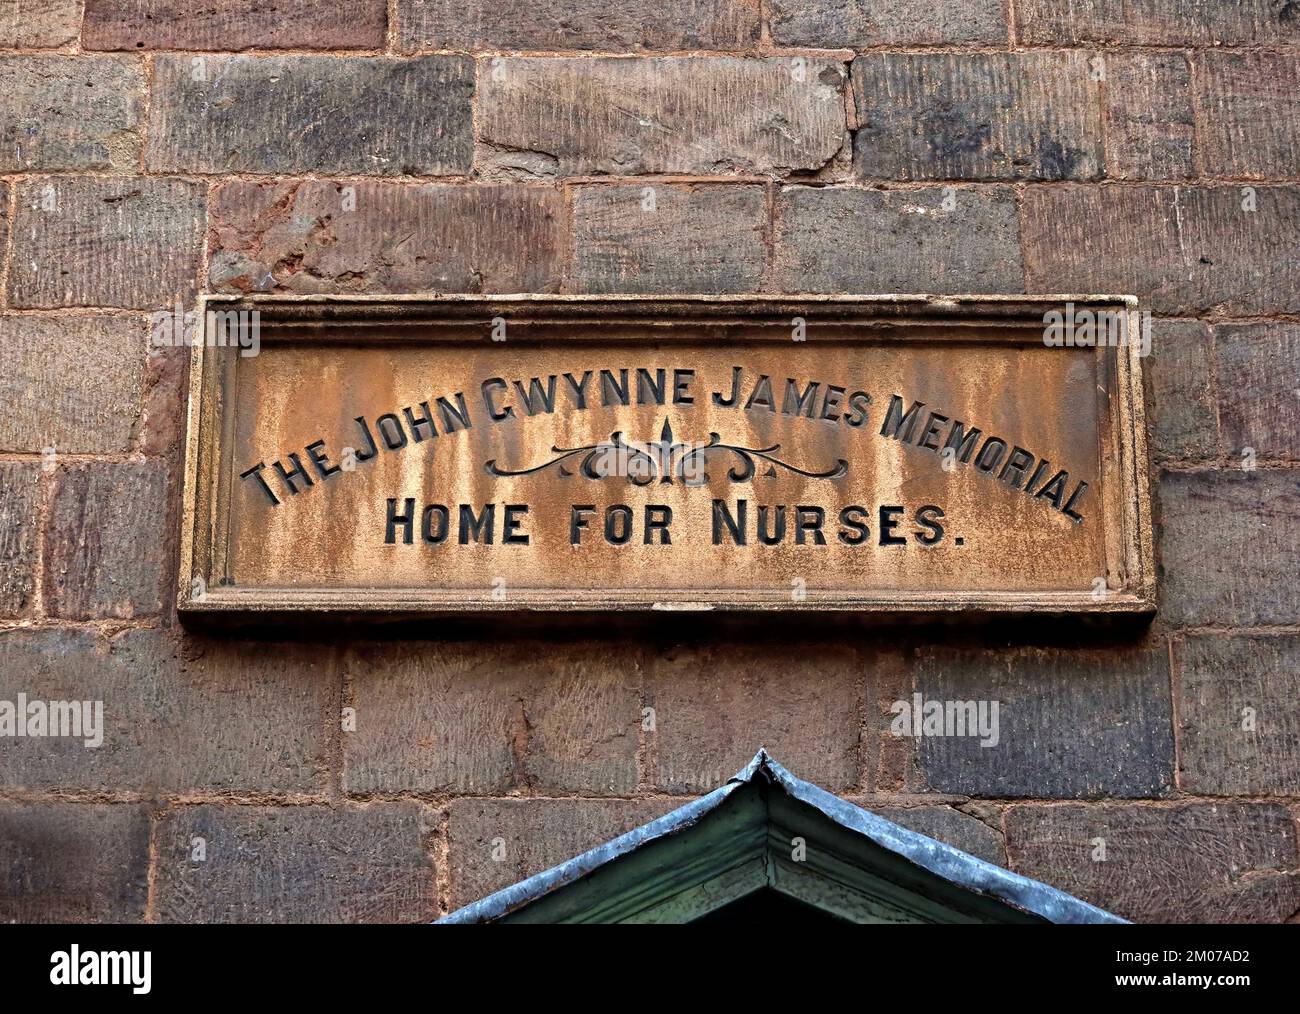 John Gwynne James, Gedenkstätte für Krankenschwestern, 33 Bridge Street, Hereford, Herefordshire, England, Großbritannien, HR4 9DG Stockfoto